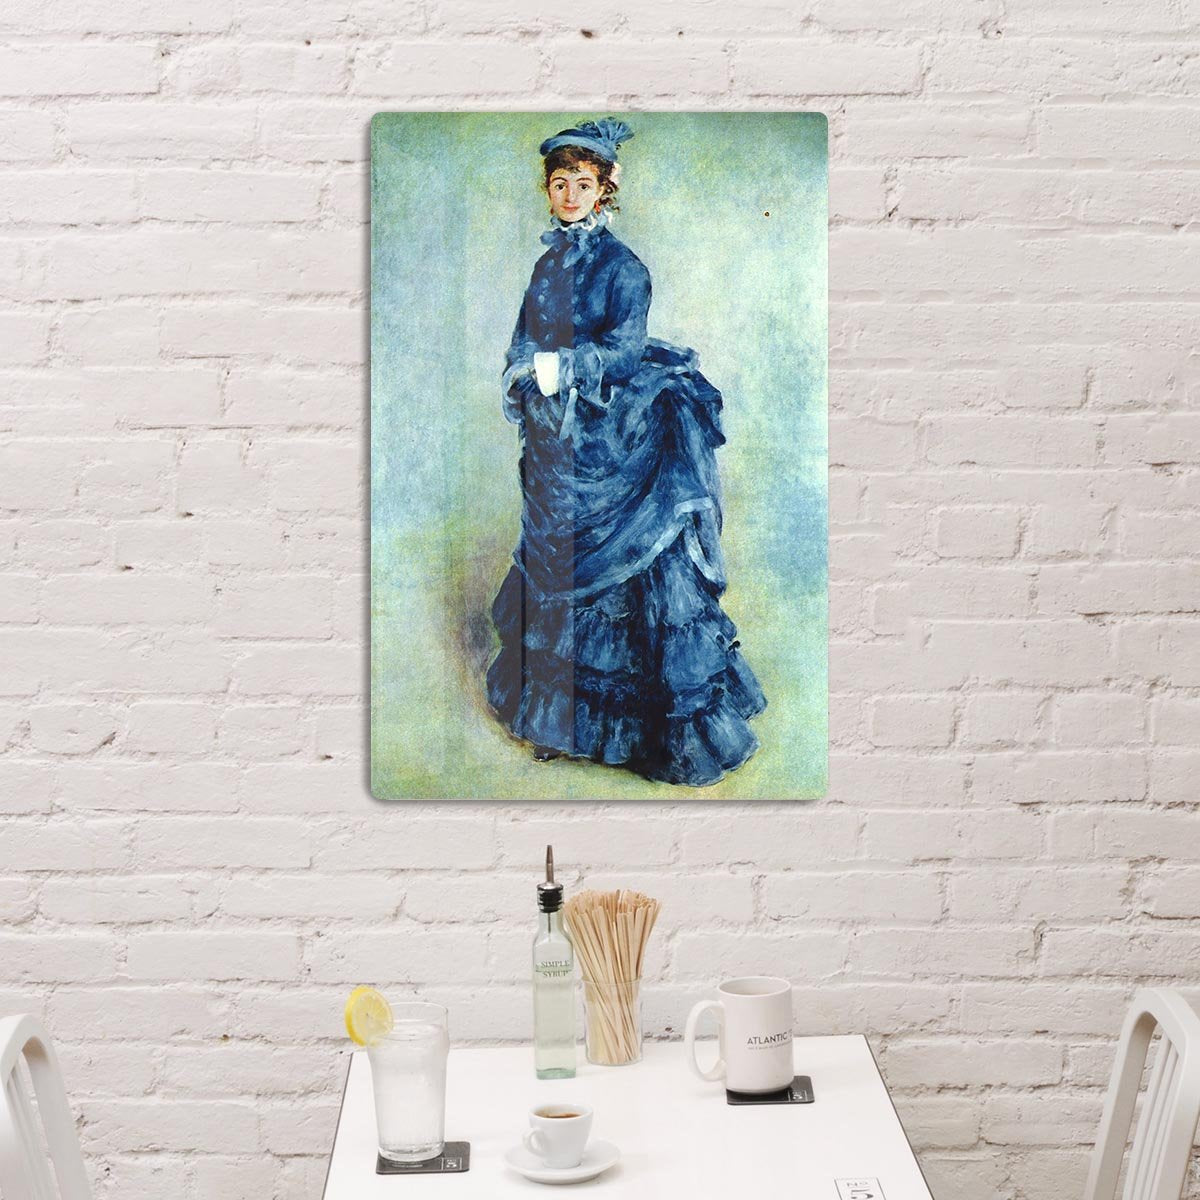 Paris girl the lady in blue by Renoir HD Metal Print